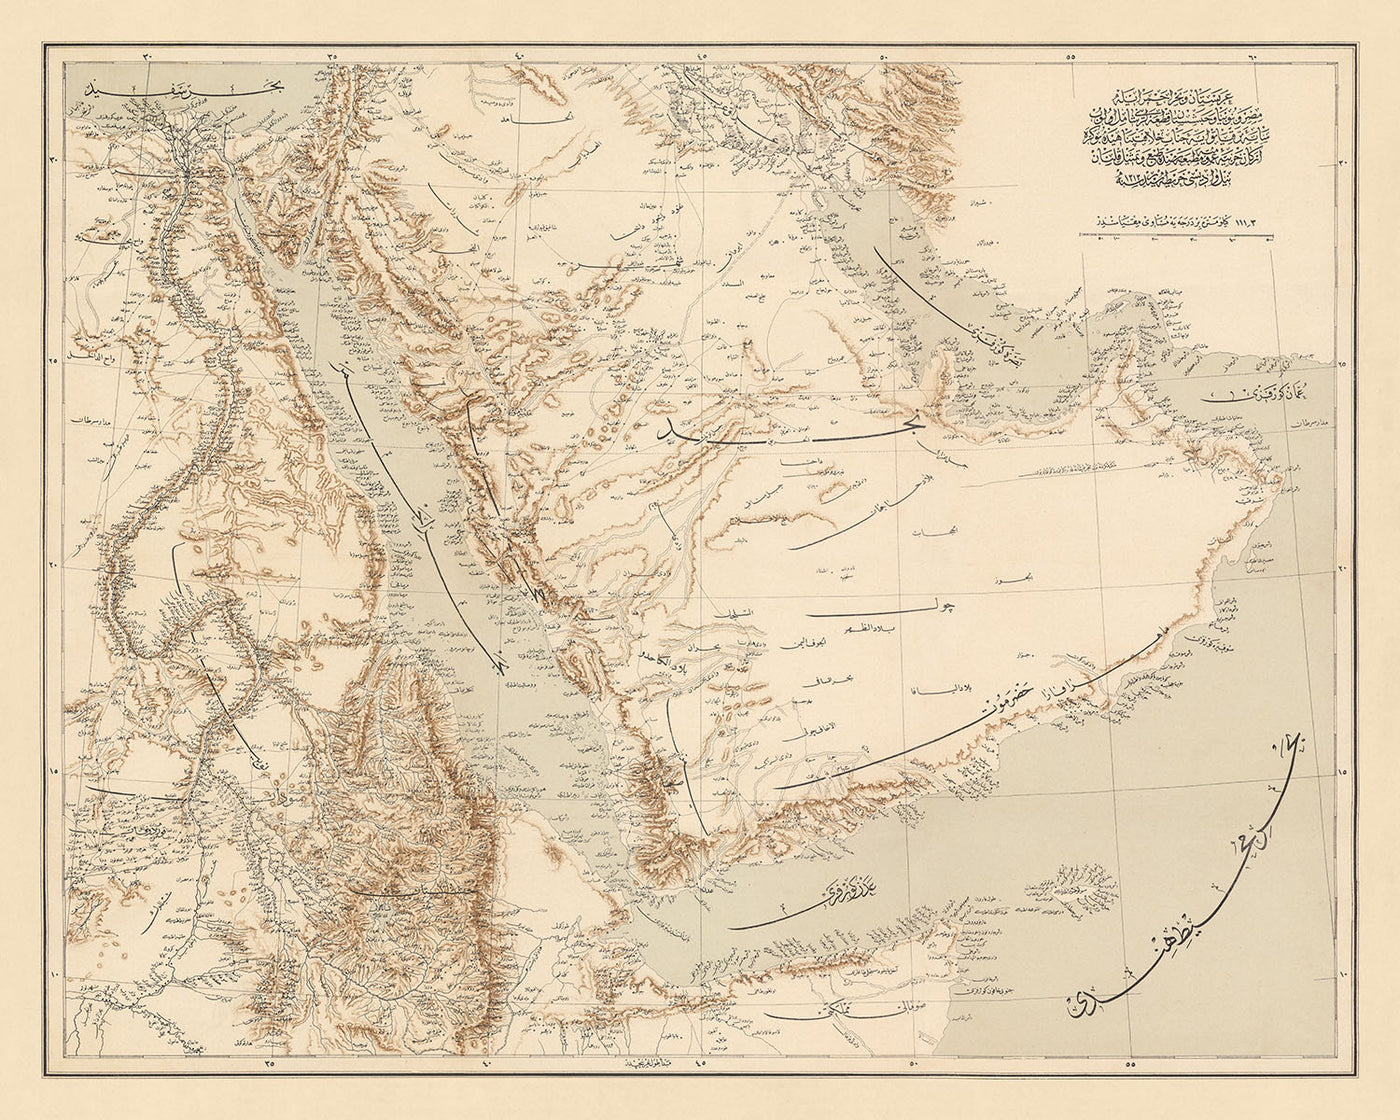 Alte Karte der Arabischen Halbinsel und des Roten Meeres vom Generalstab der Osmanischen Armee, 1897: Nil, Saudi-Arabien und Irak, Persischer Golf, Vereinigte Arabische Emirate, Rotes Meer